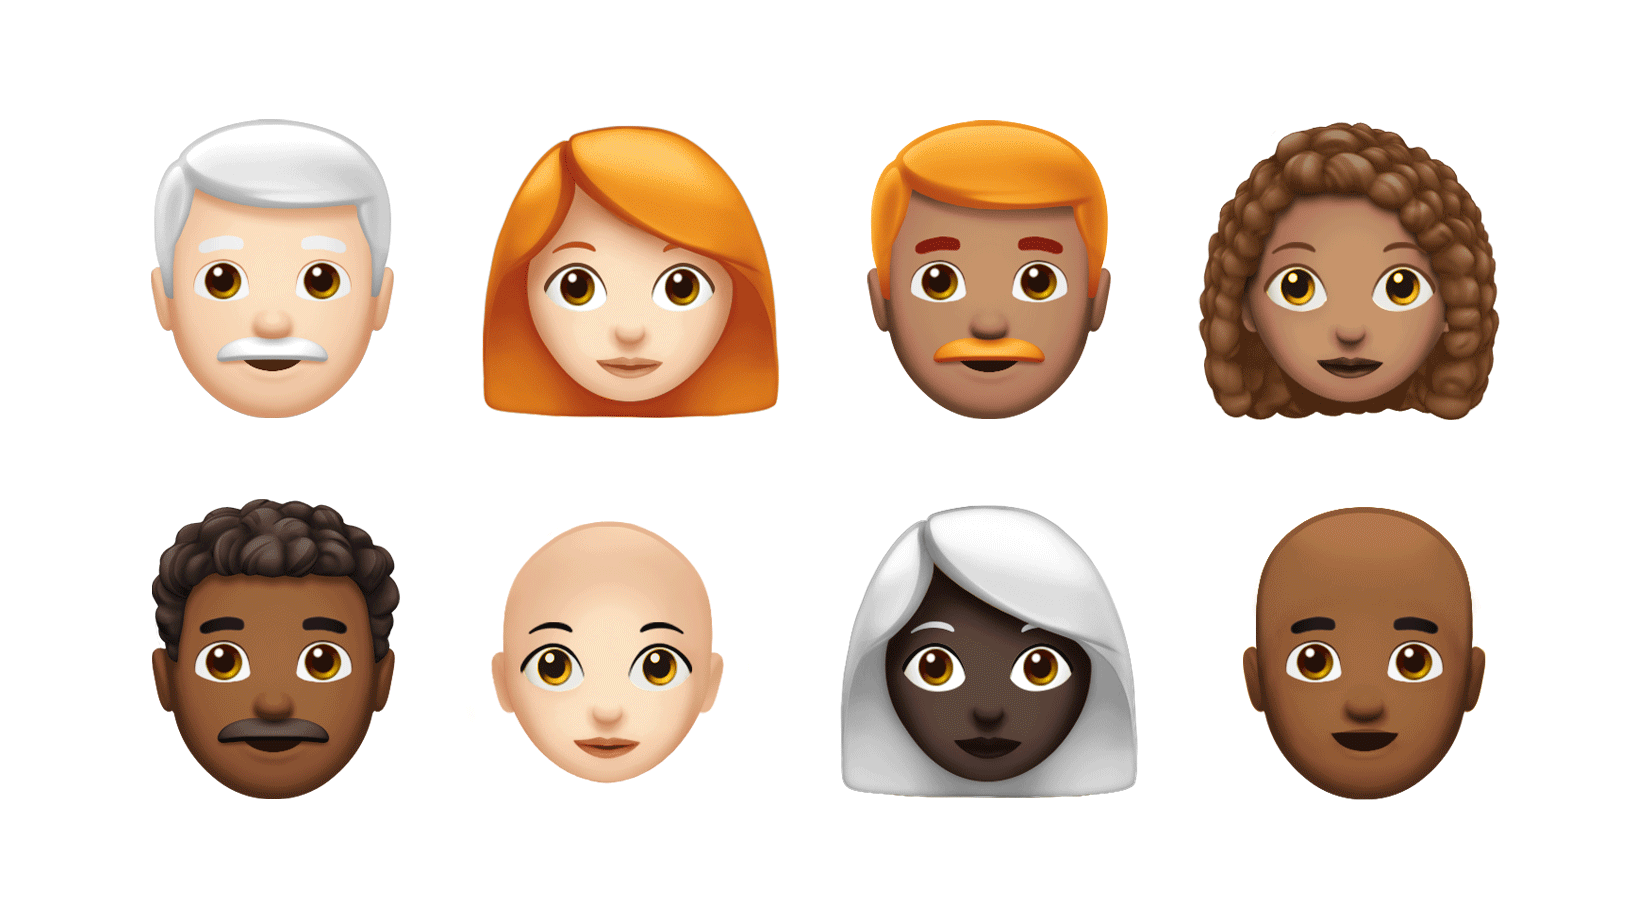 Zwei Reihen neuer Emoji-Designs, inklusive Emojis mit grauen, roten und lockigen Haaren.